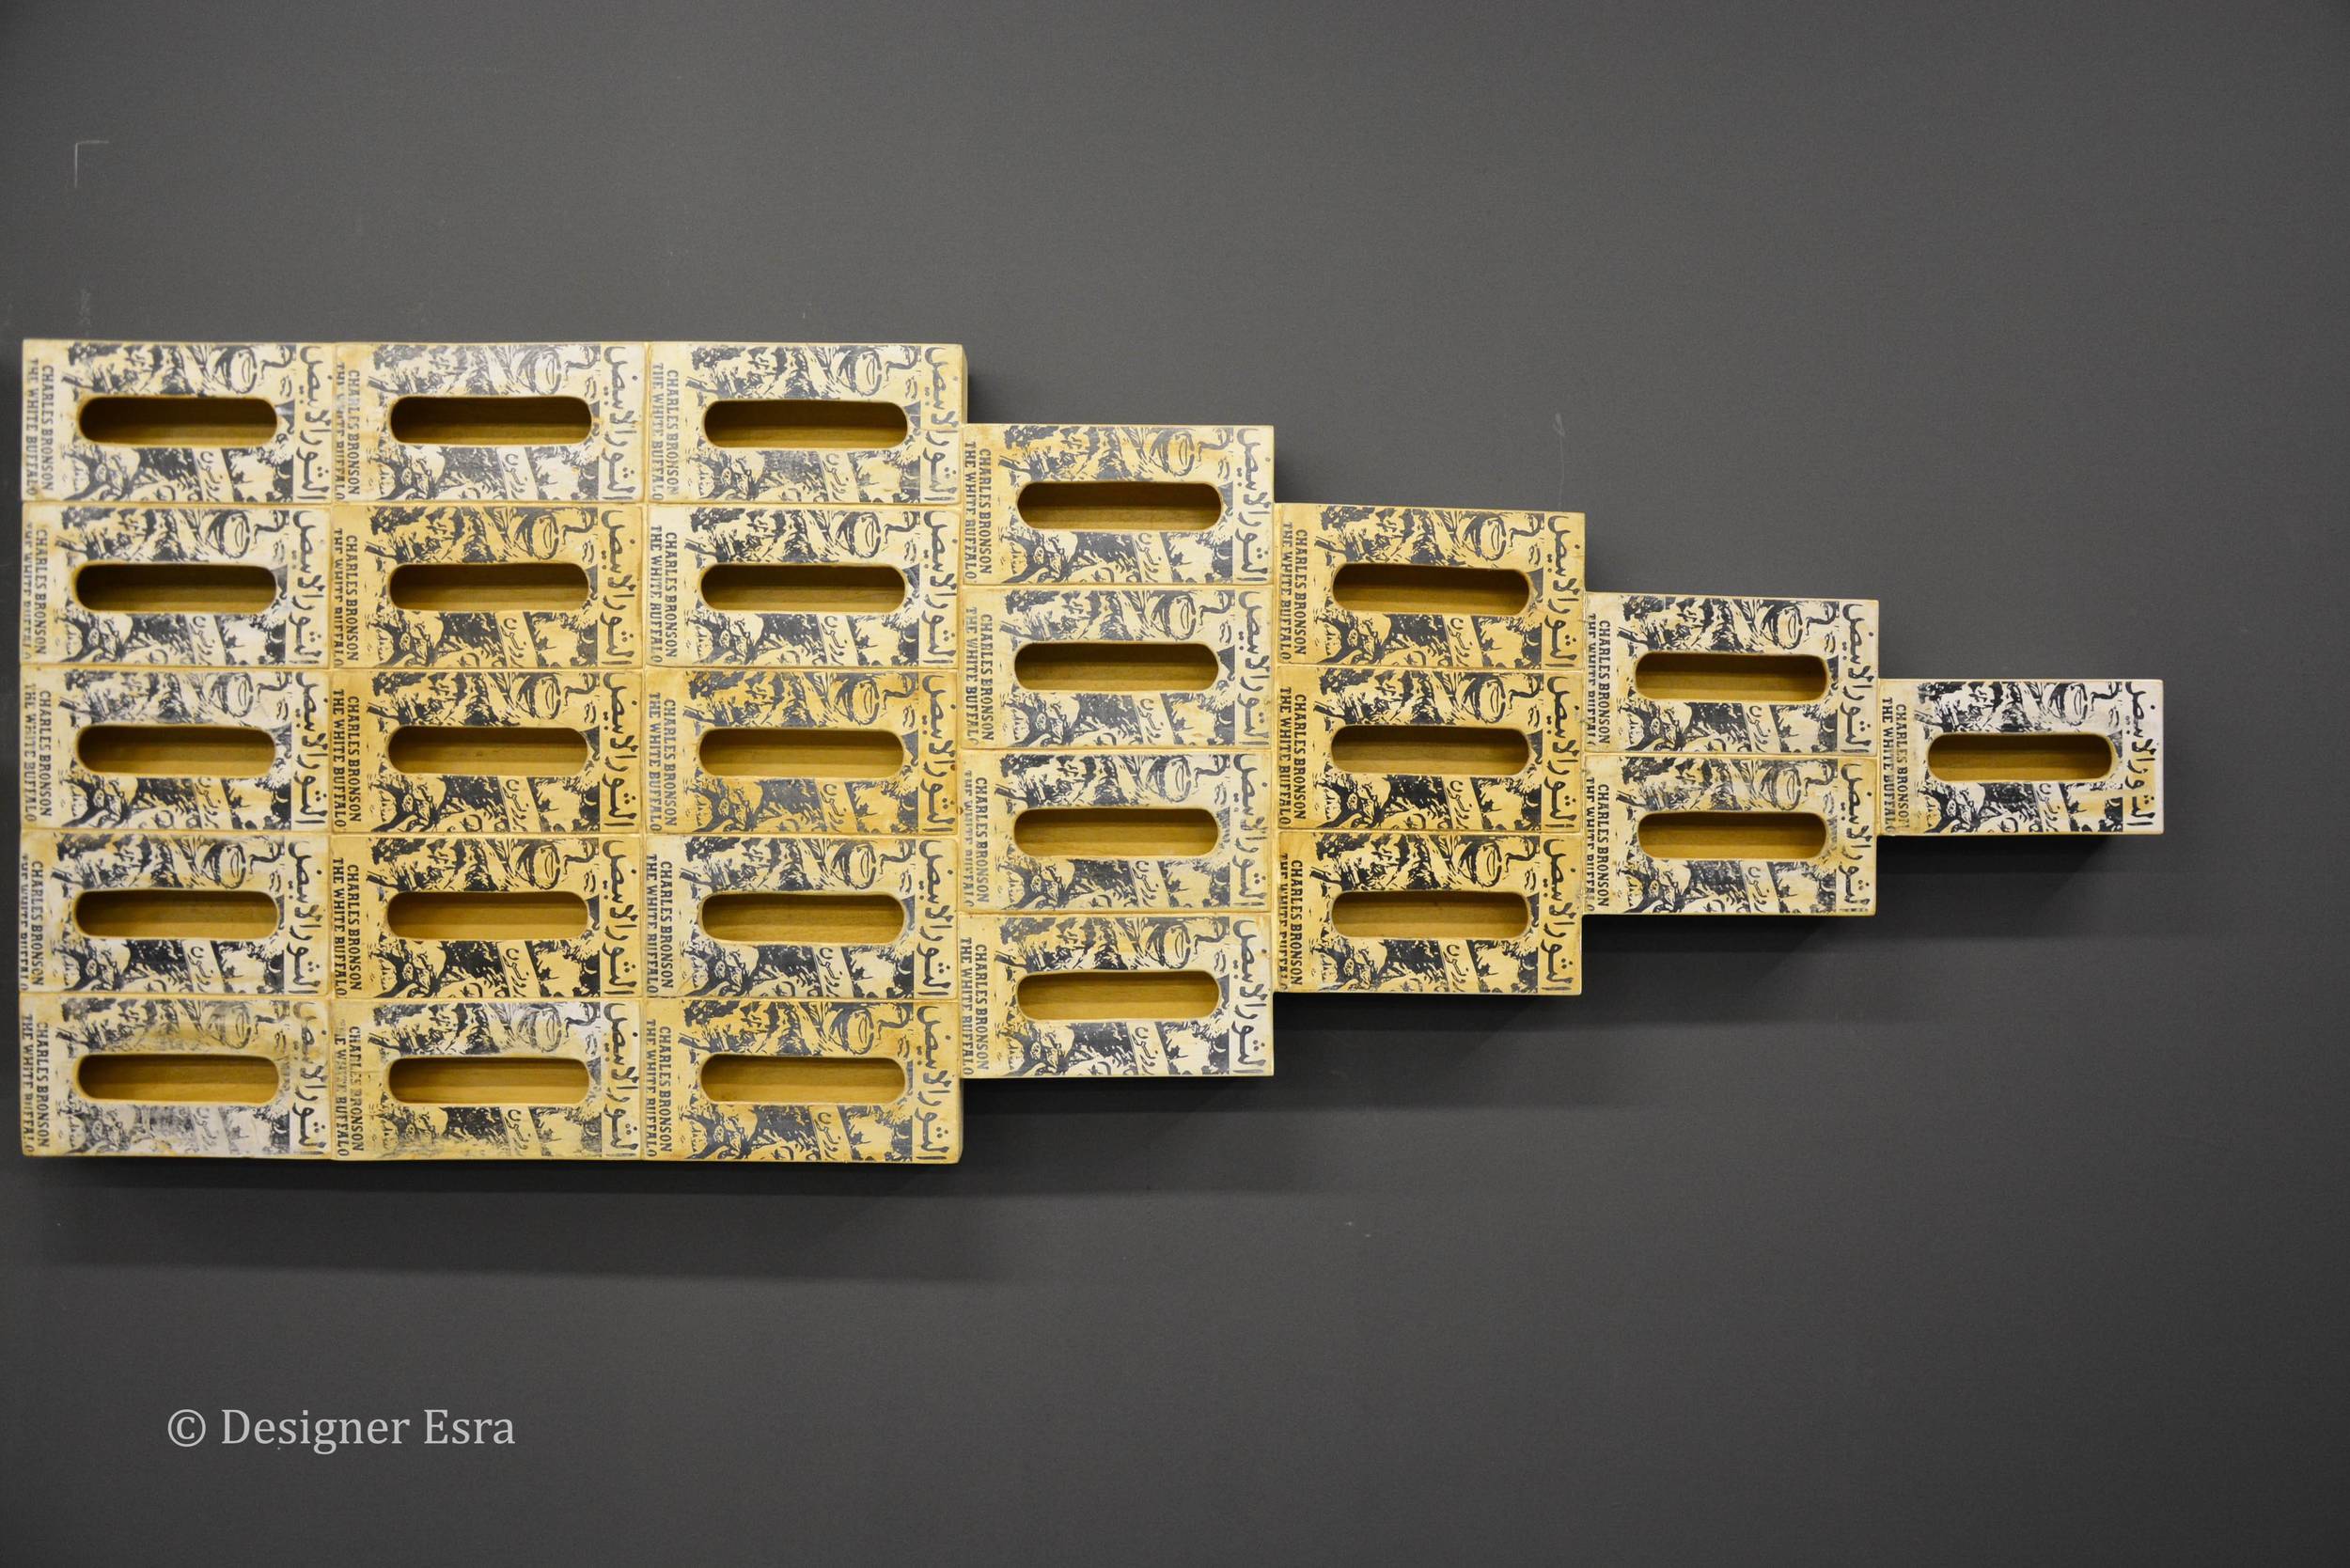 Screen Printing on Wood by Ayman Yossri Daydban 